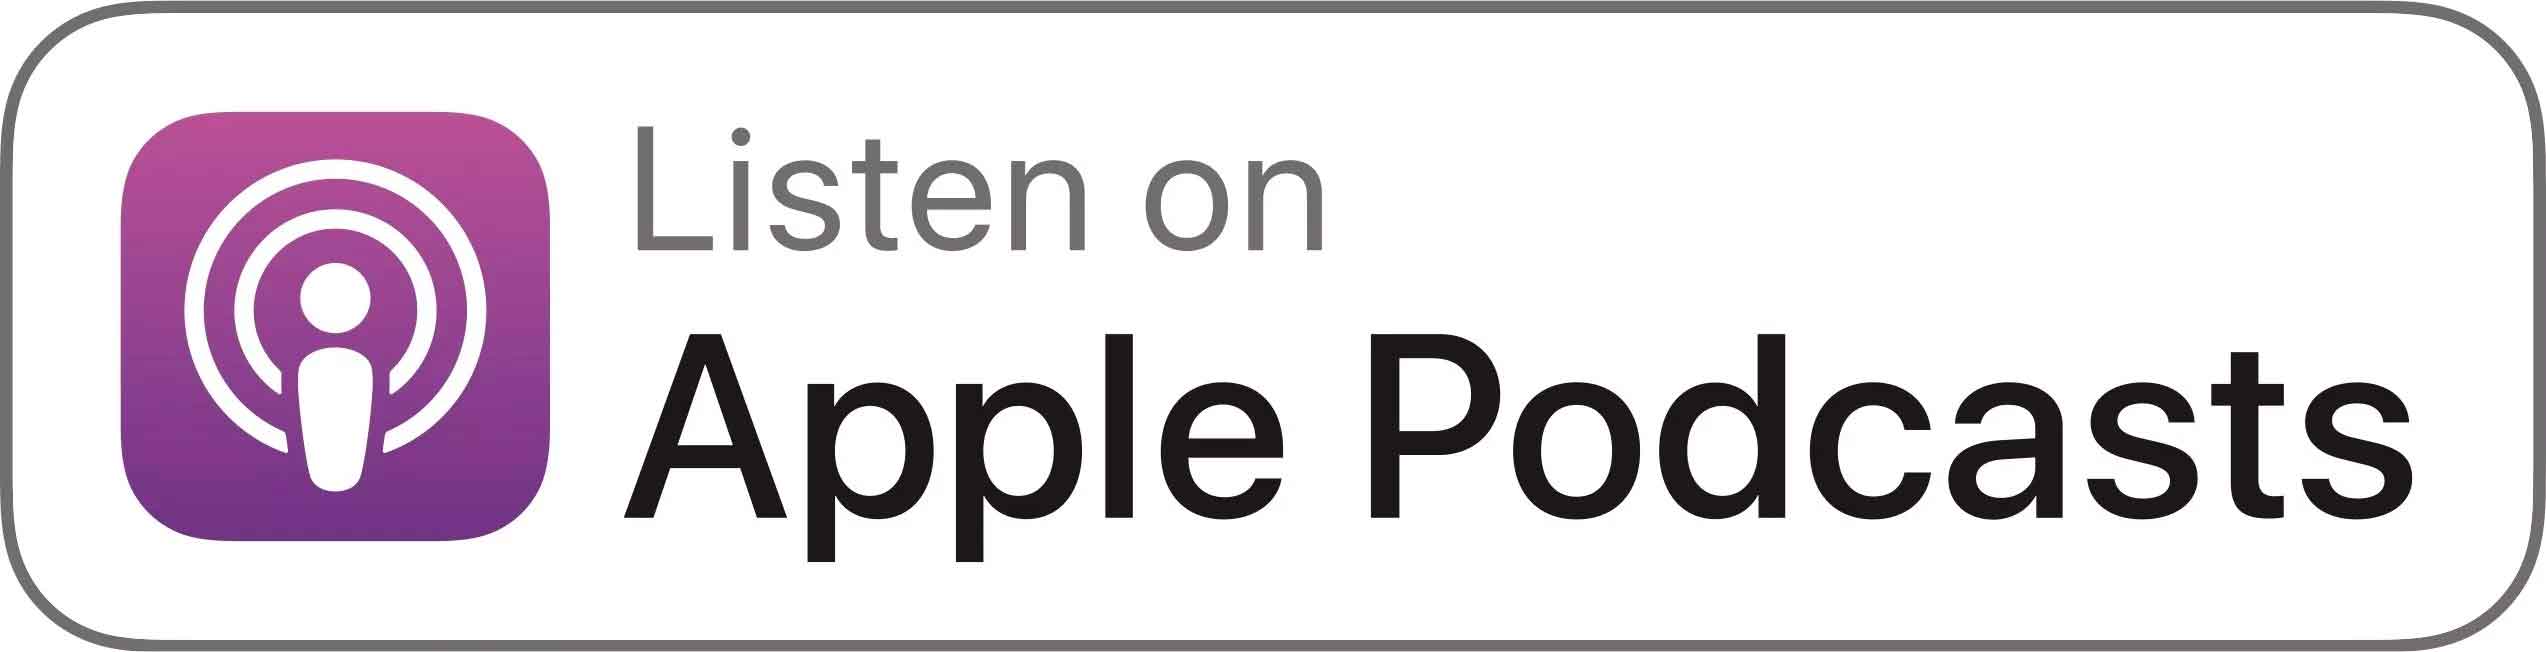 apple-podcast-logo.jpg